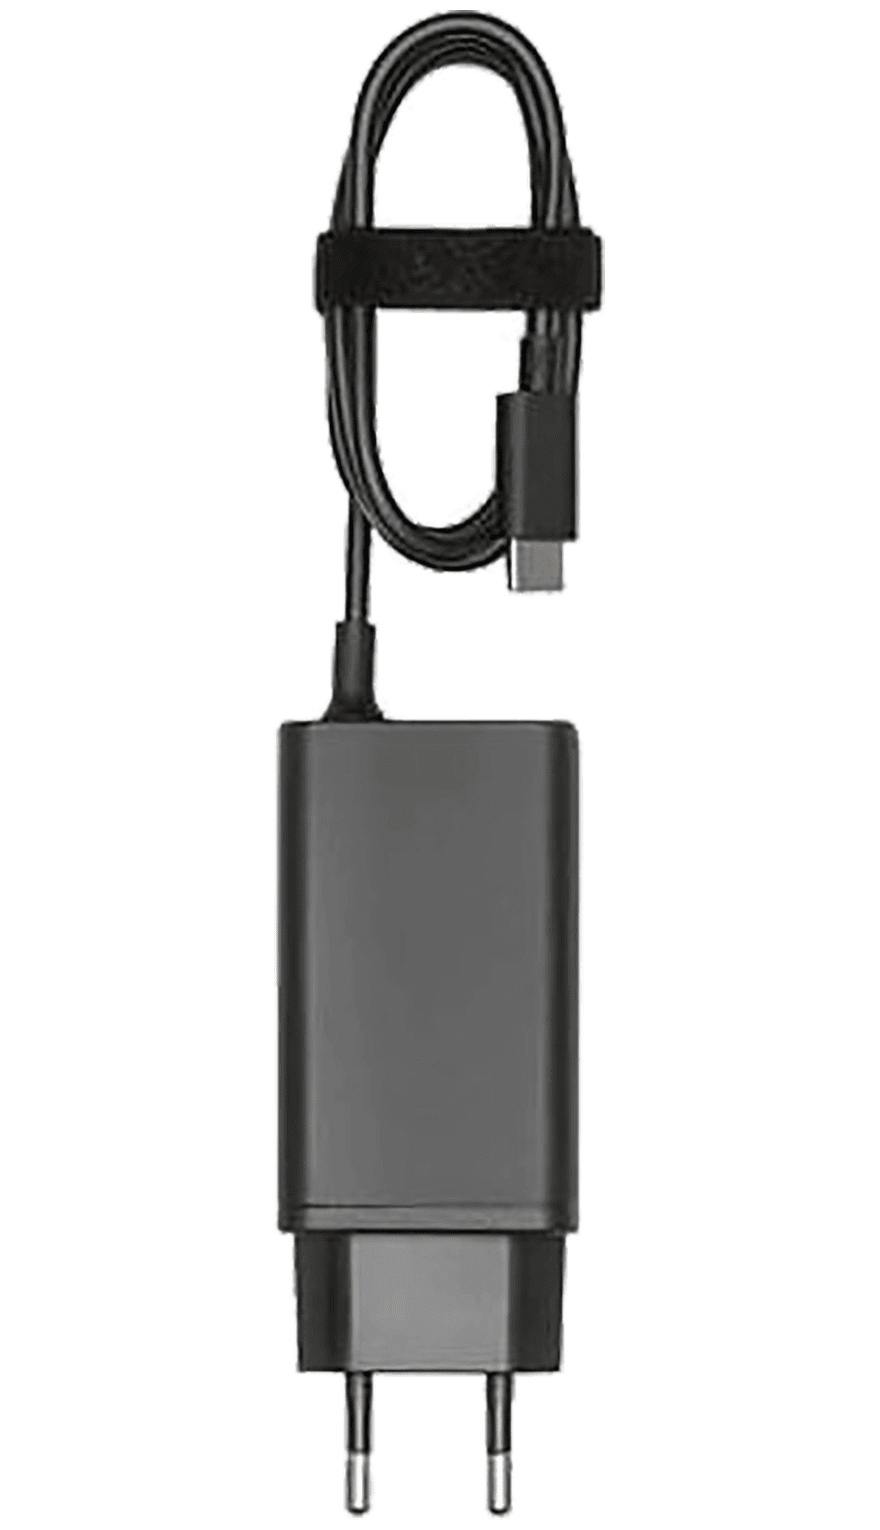 DJI 65W Portable Charger